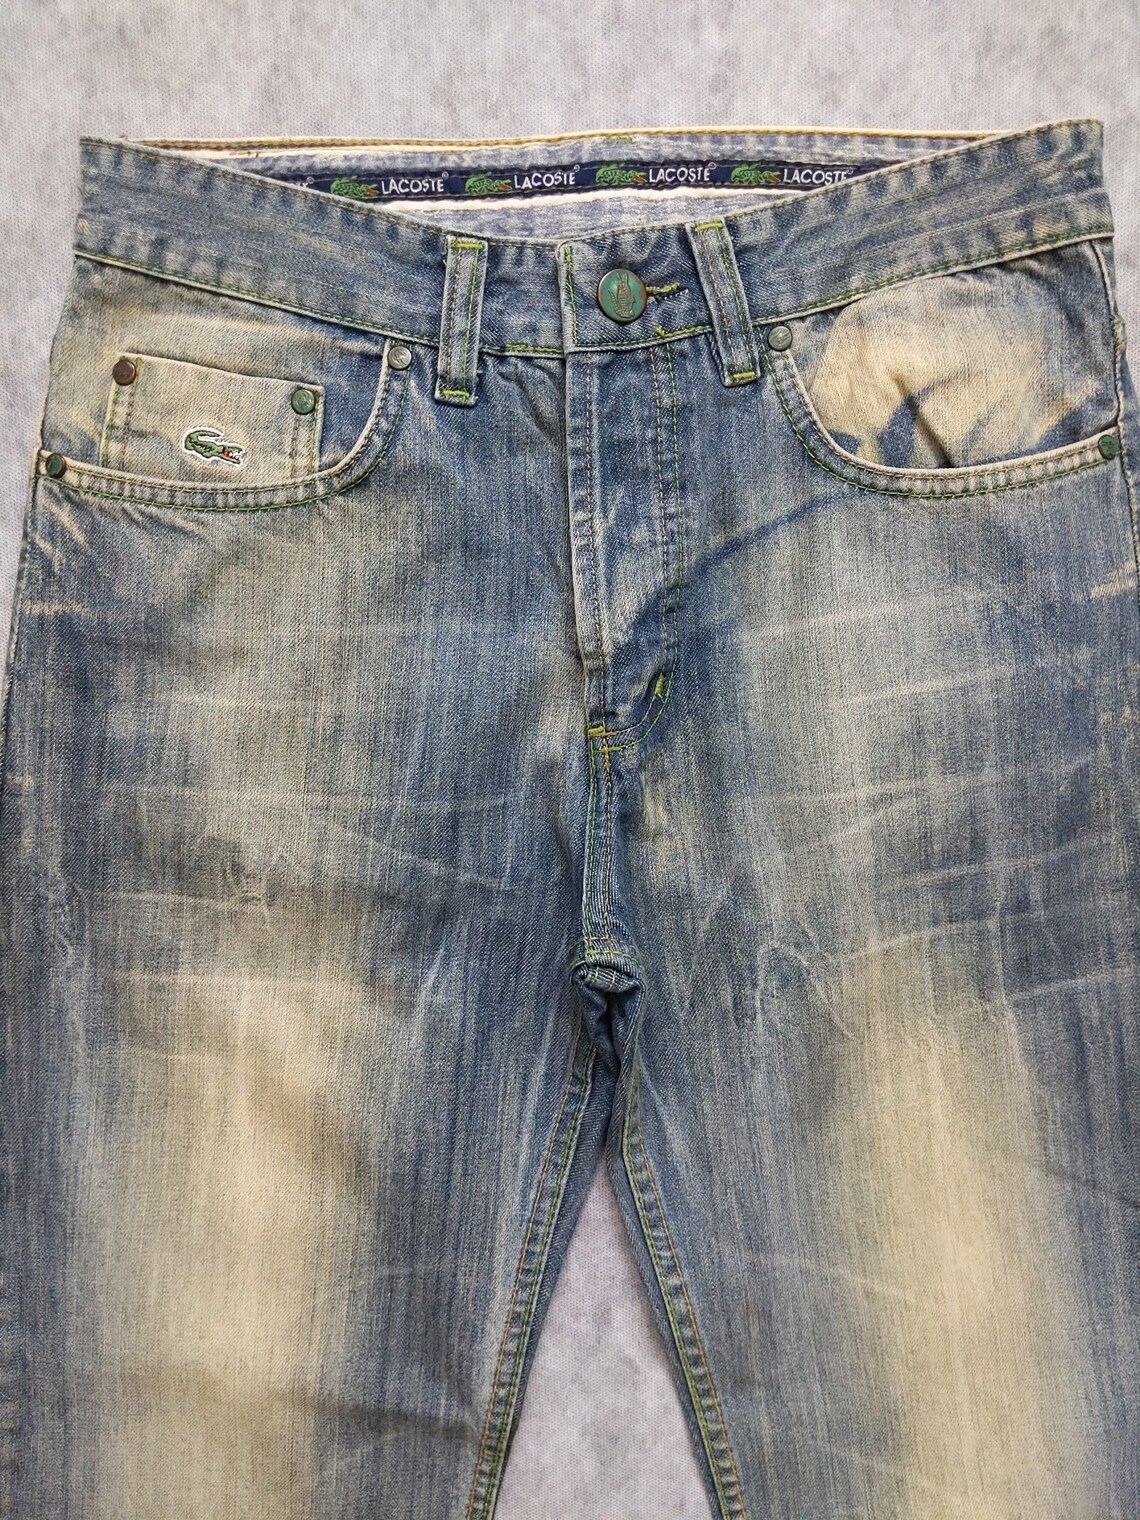 Mens Lacoste exclusive Rare Vintage Jeans size W29 L32 | Etsy